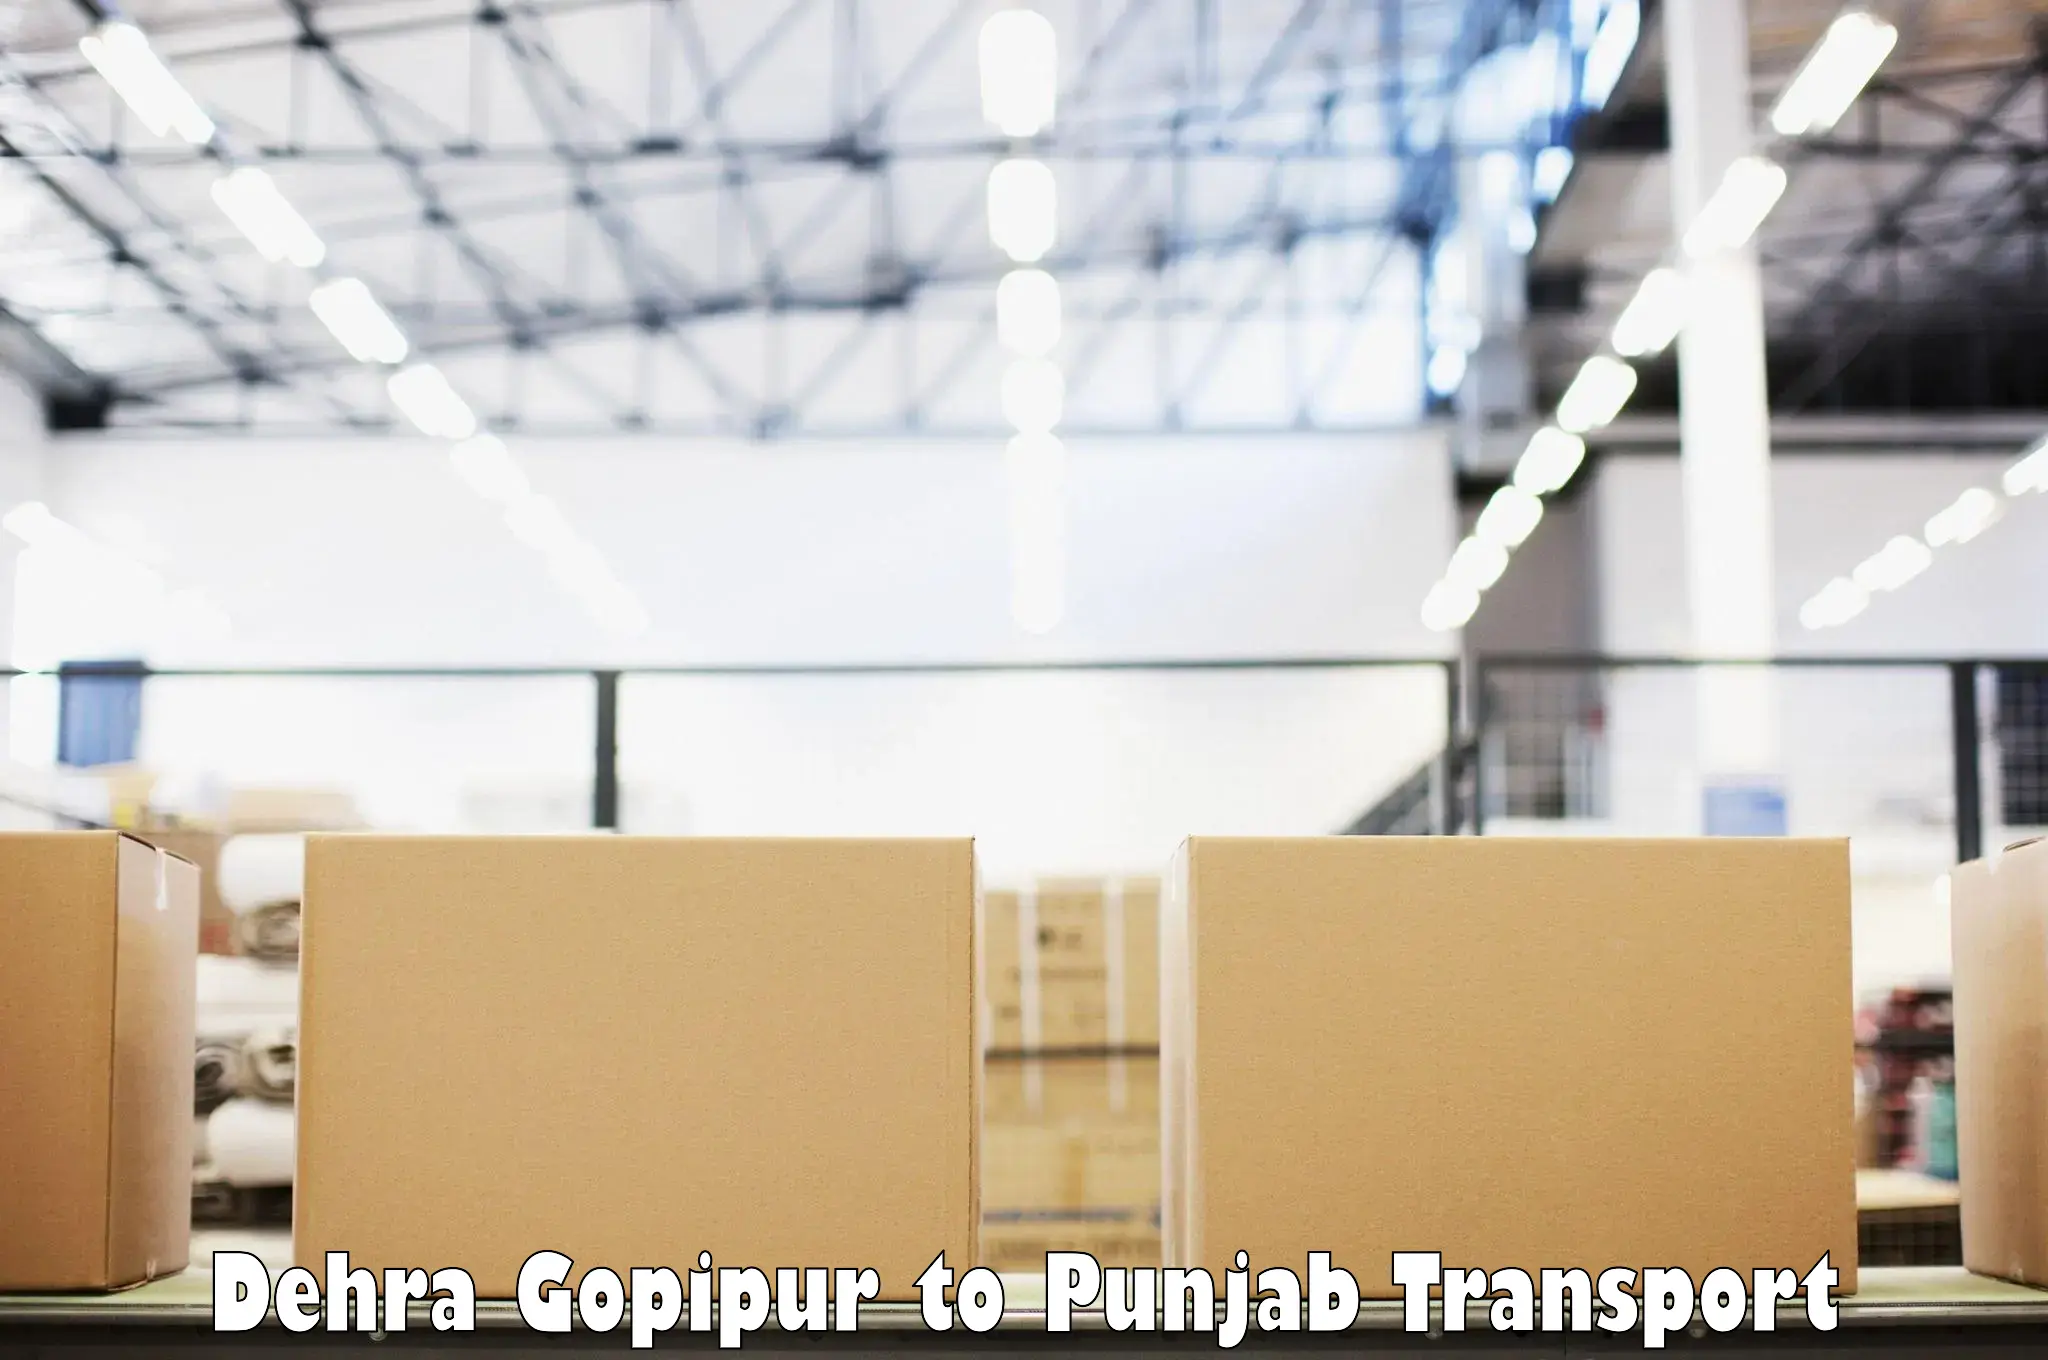 Delivery service Dehra Gopipur to Rupnagar